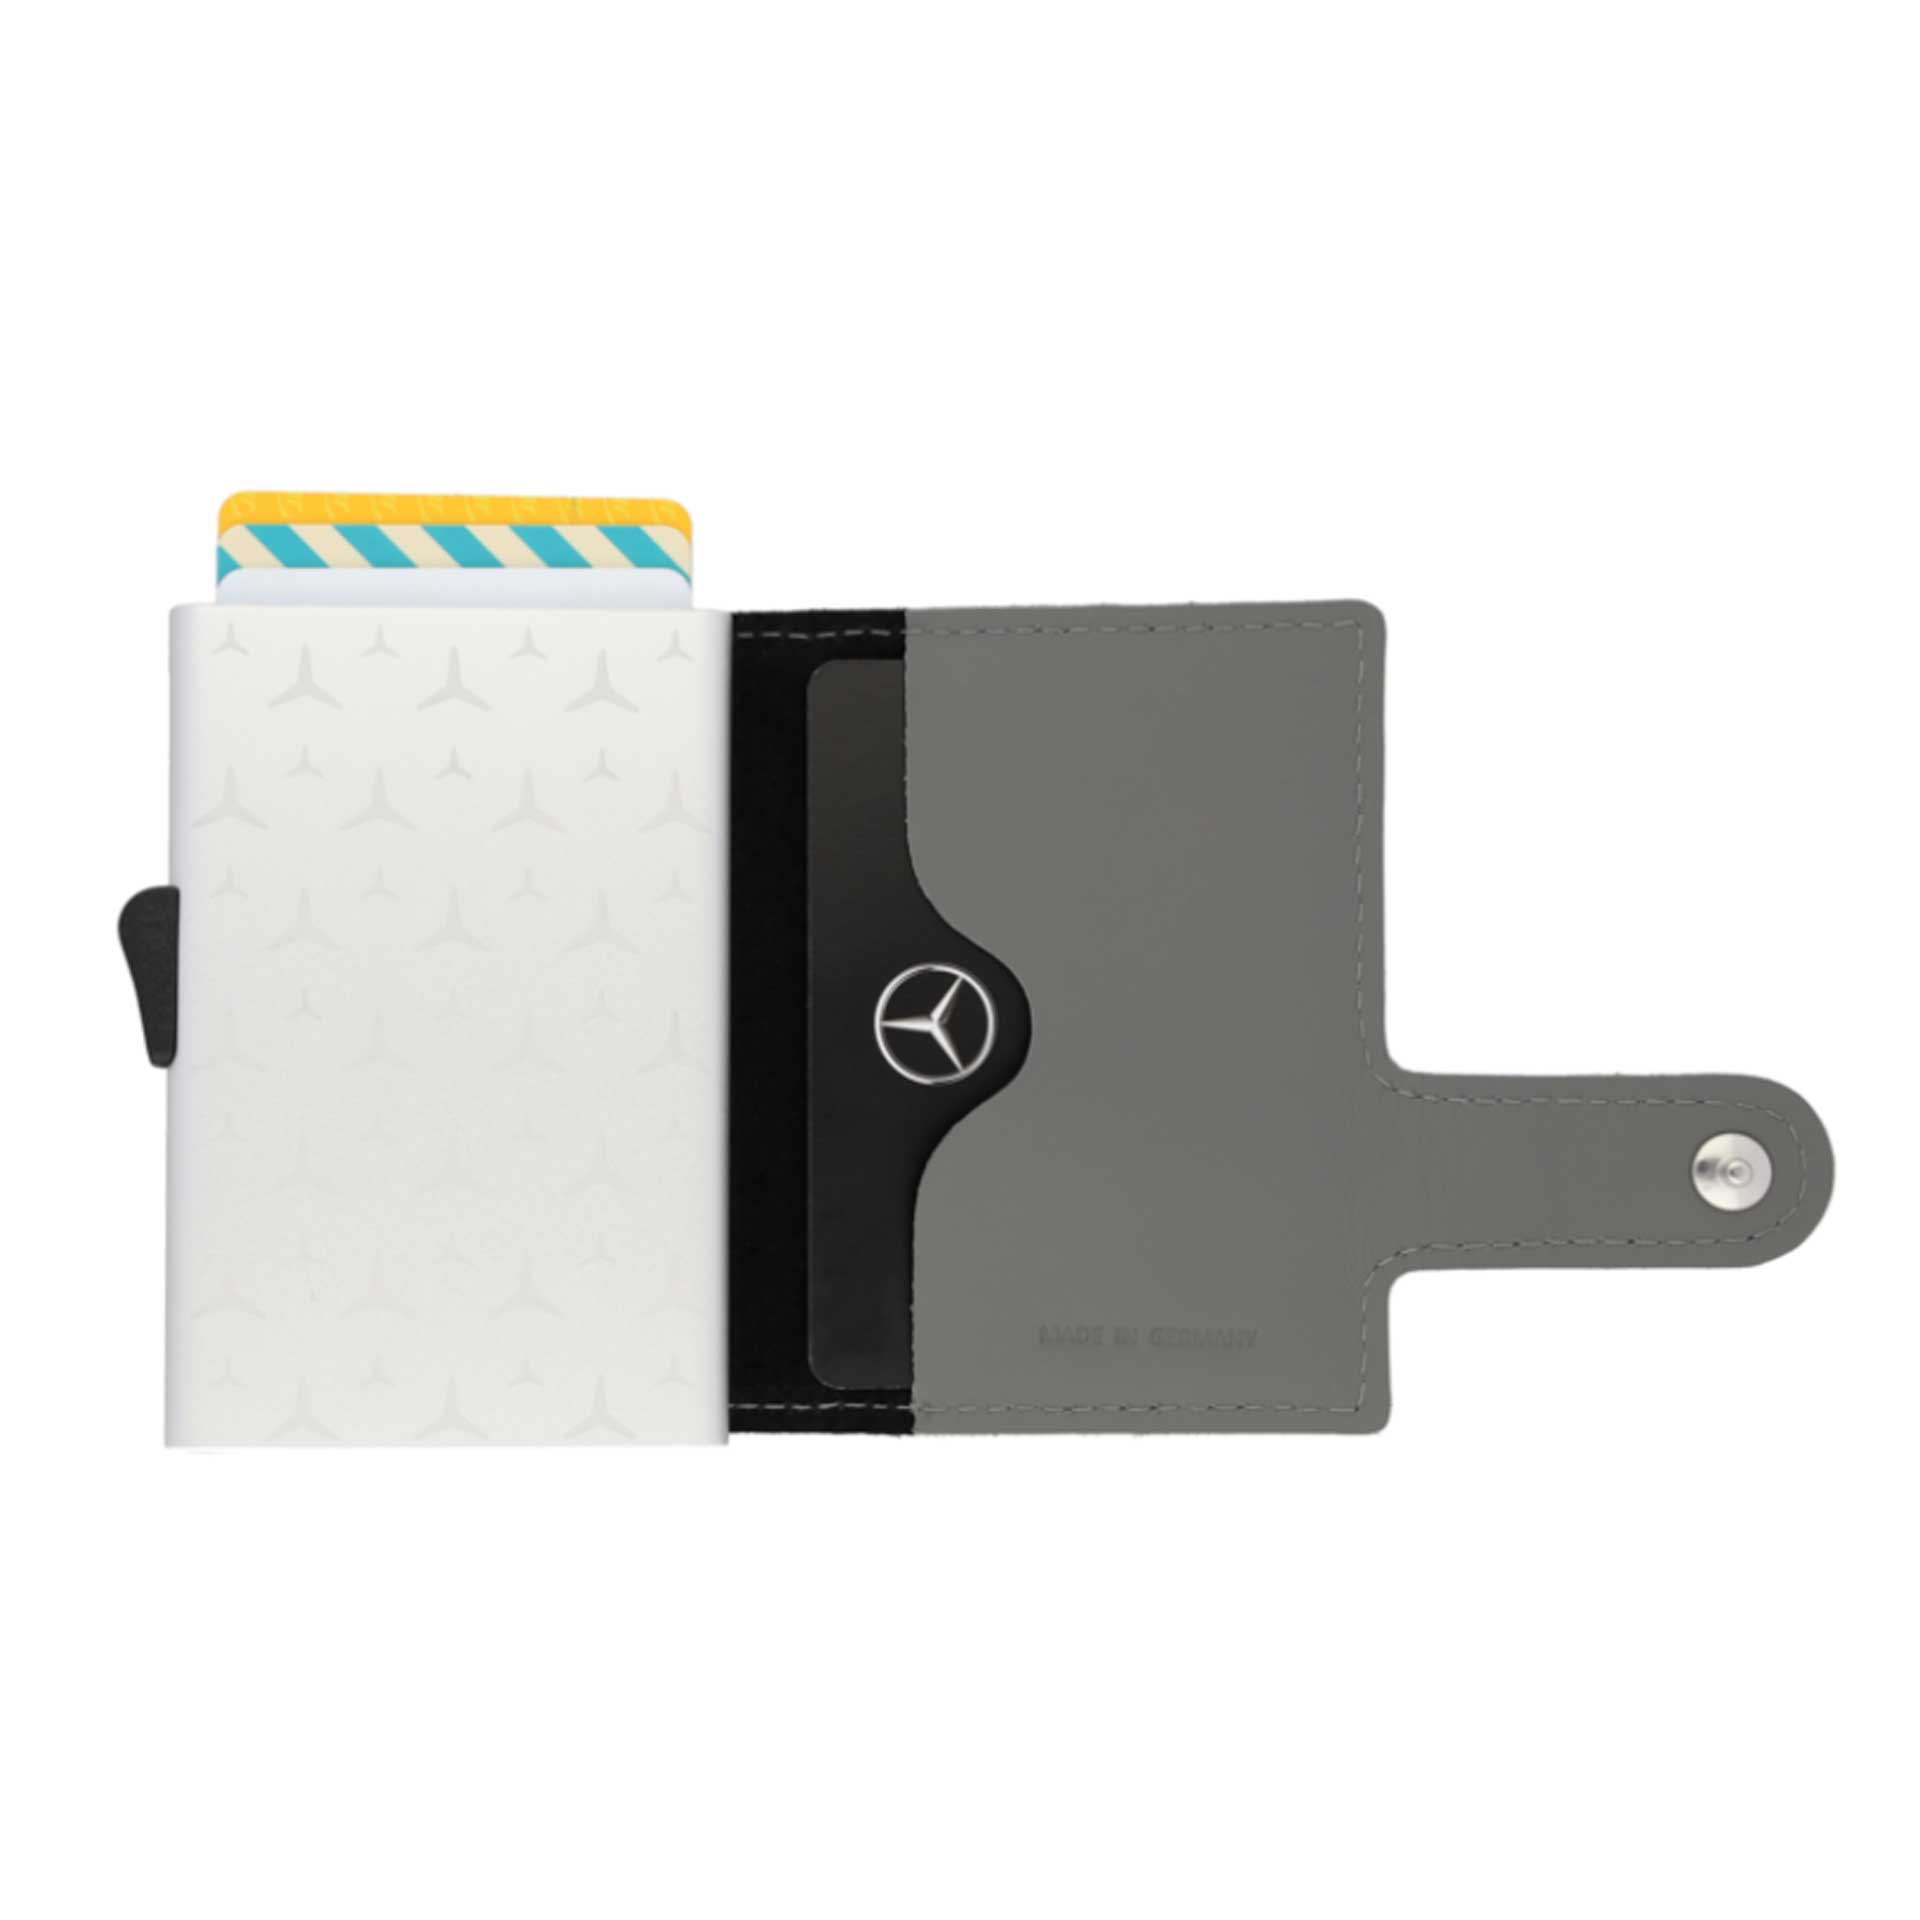 Mercedes-Benz Minigeldbörse aus Leder aus Fahrzeugproduktion silbergrau B66959260